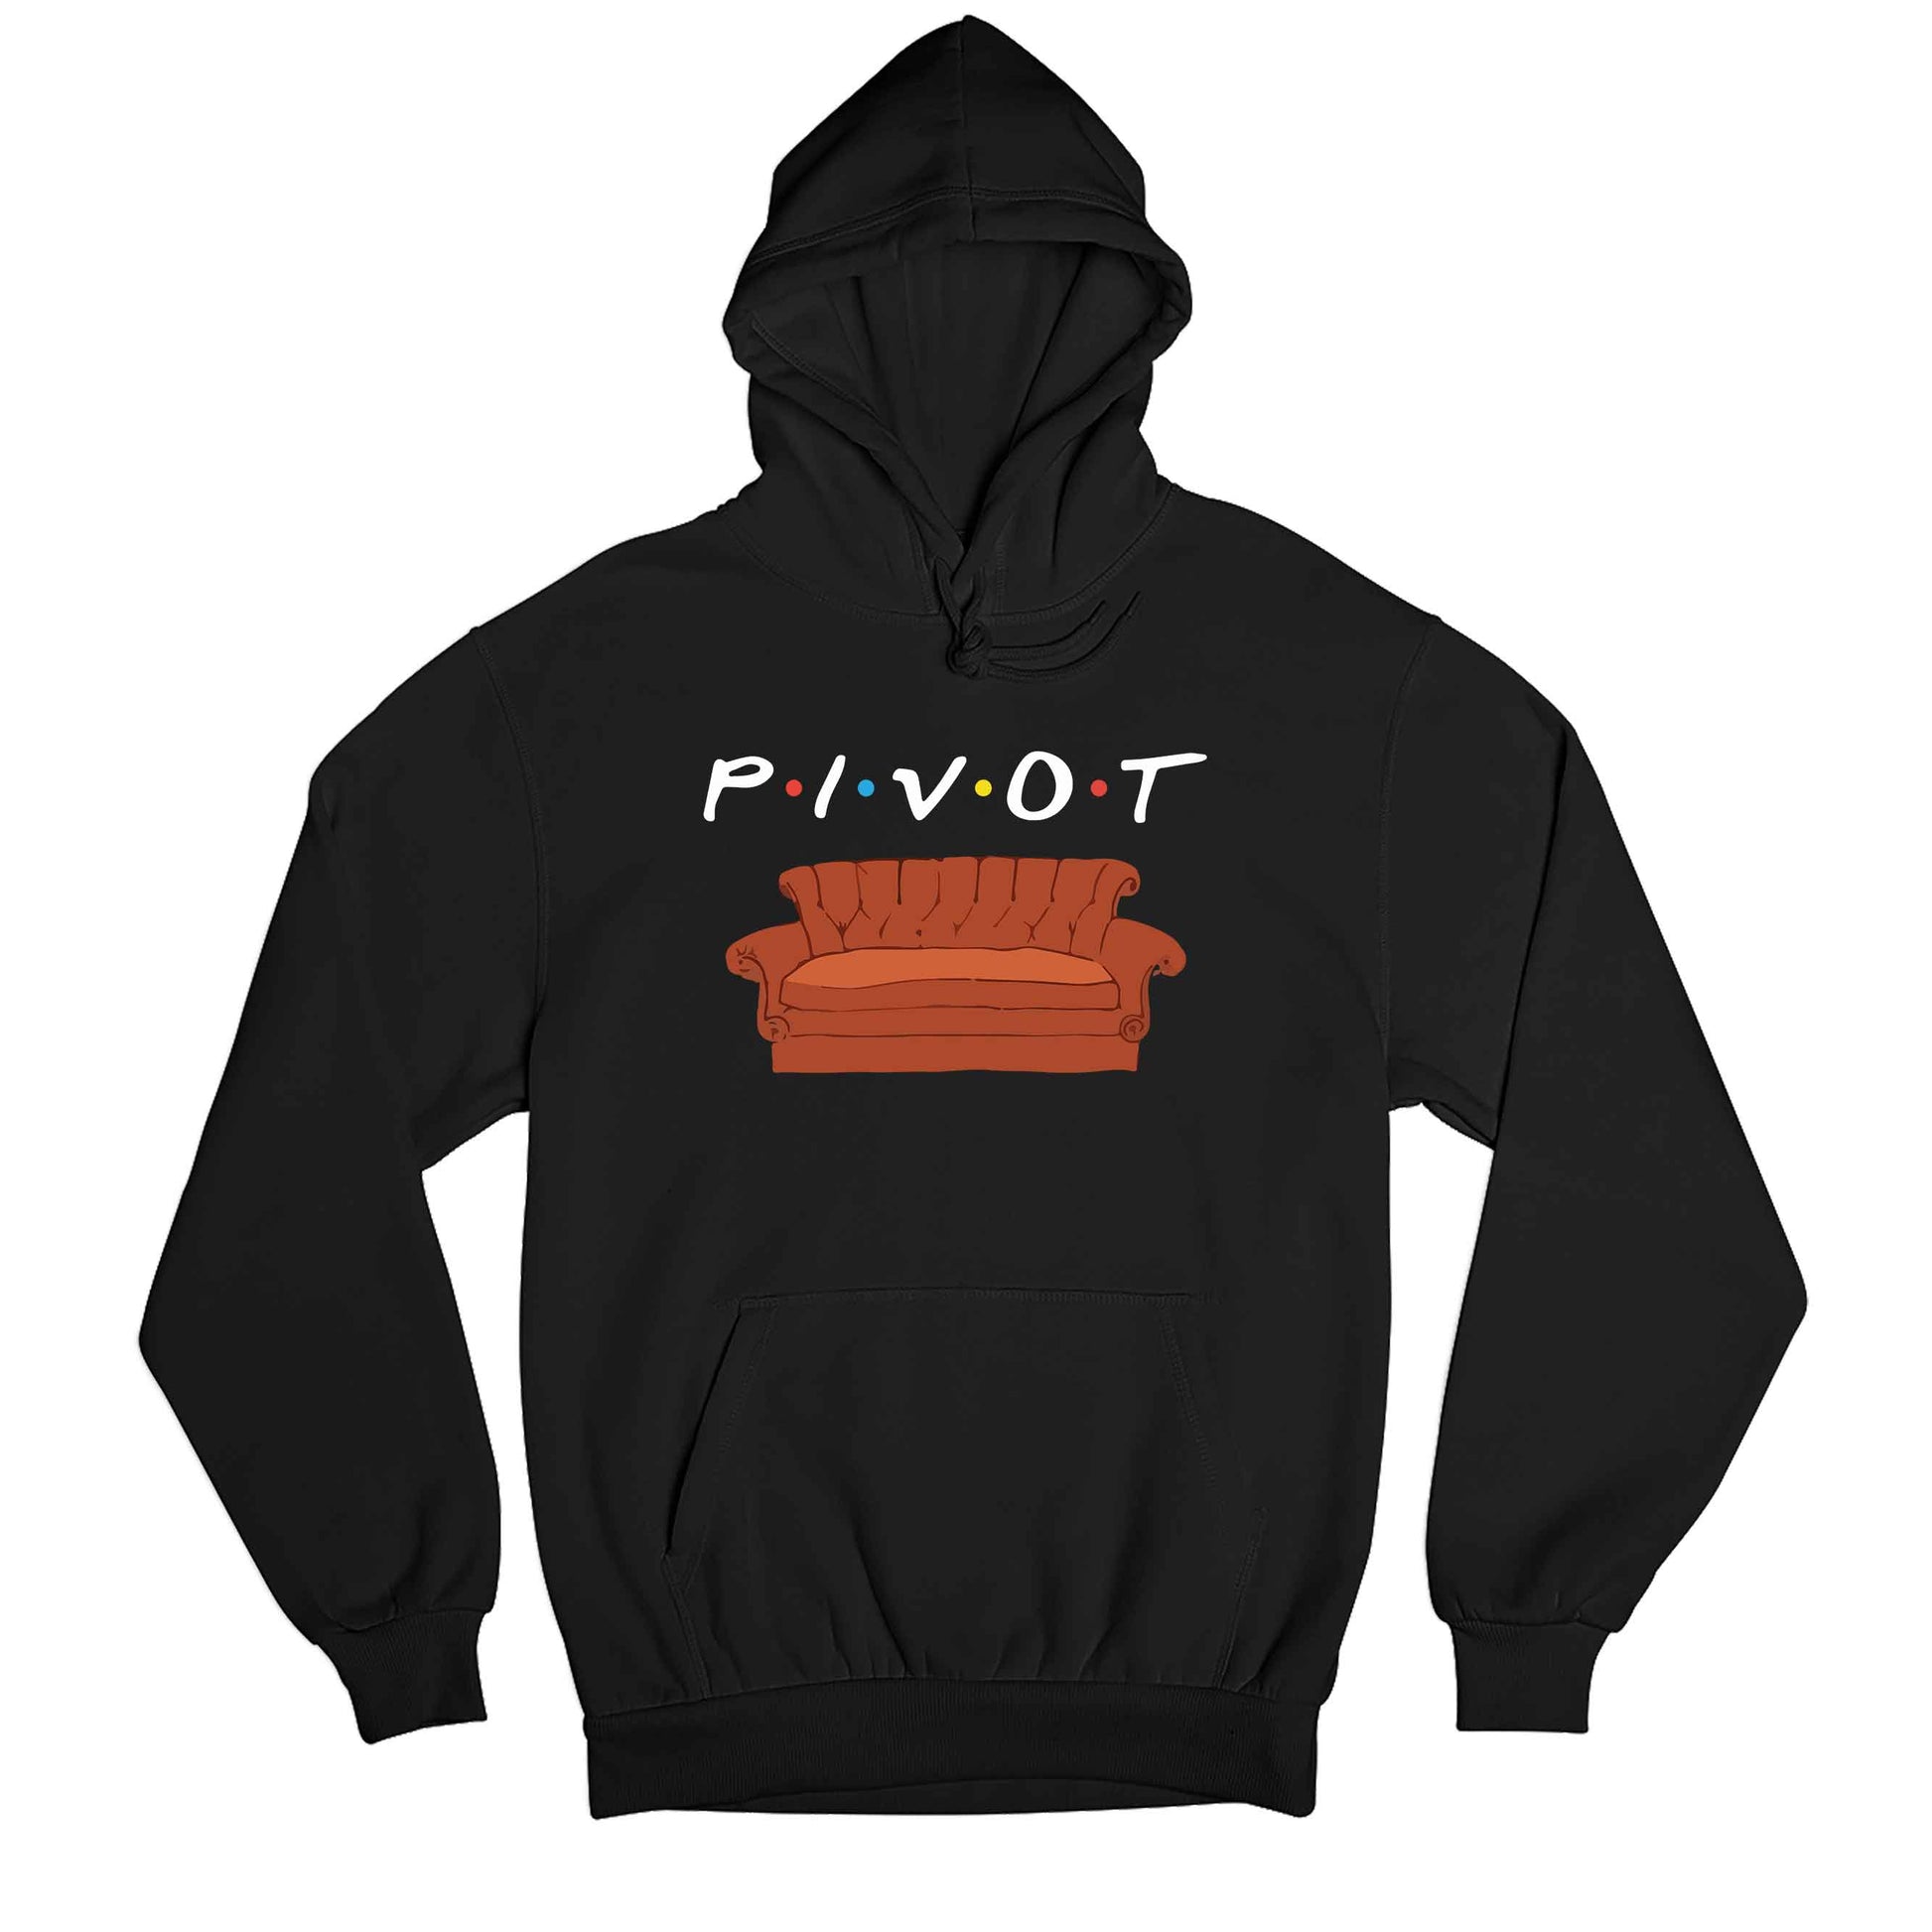 Friends Hoodie - Pivot Hoodie Hooded Sweatshirt The Banyan Tee TBT